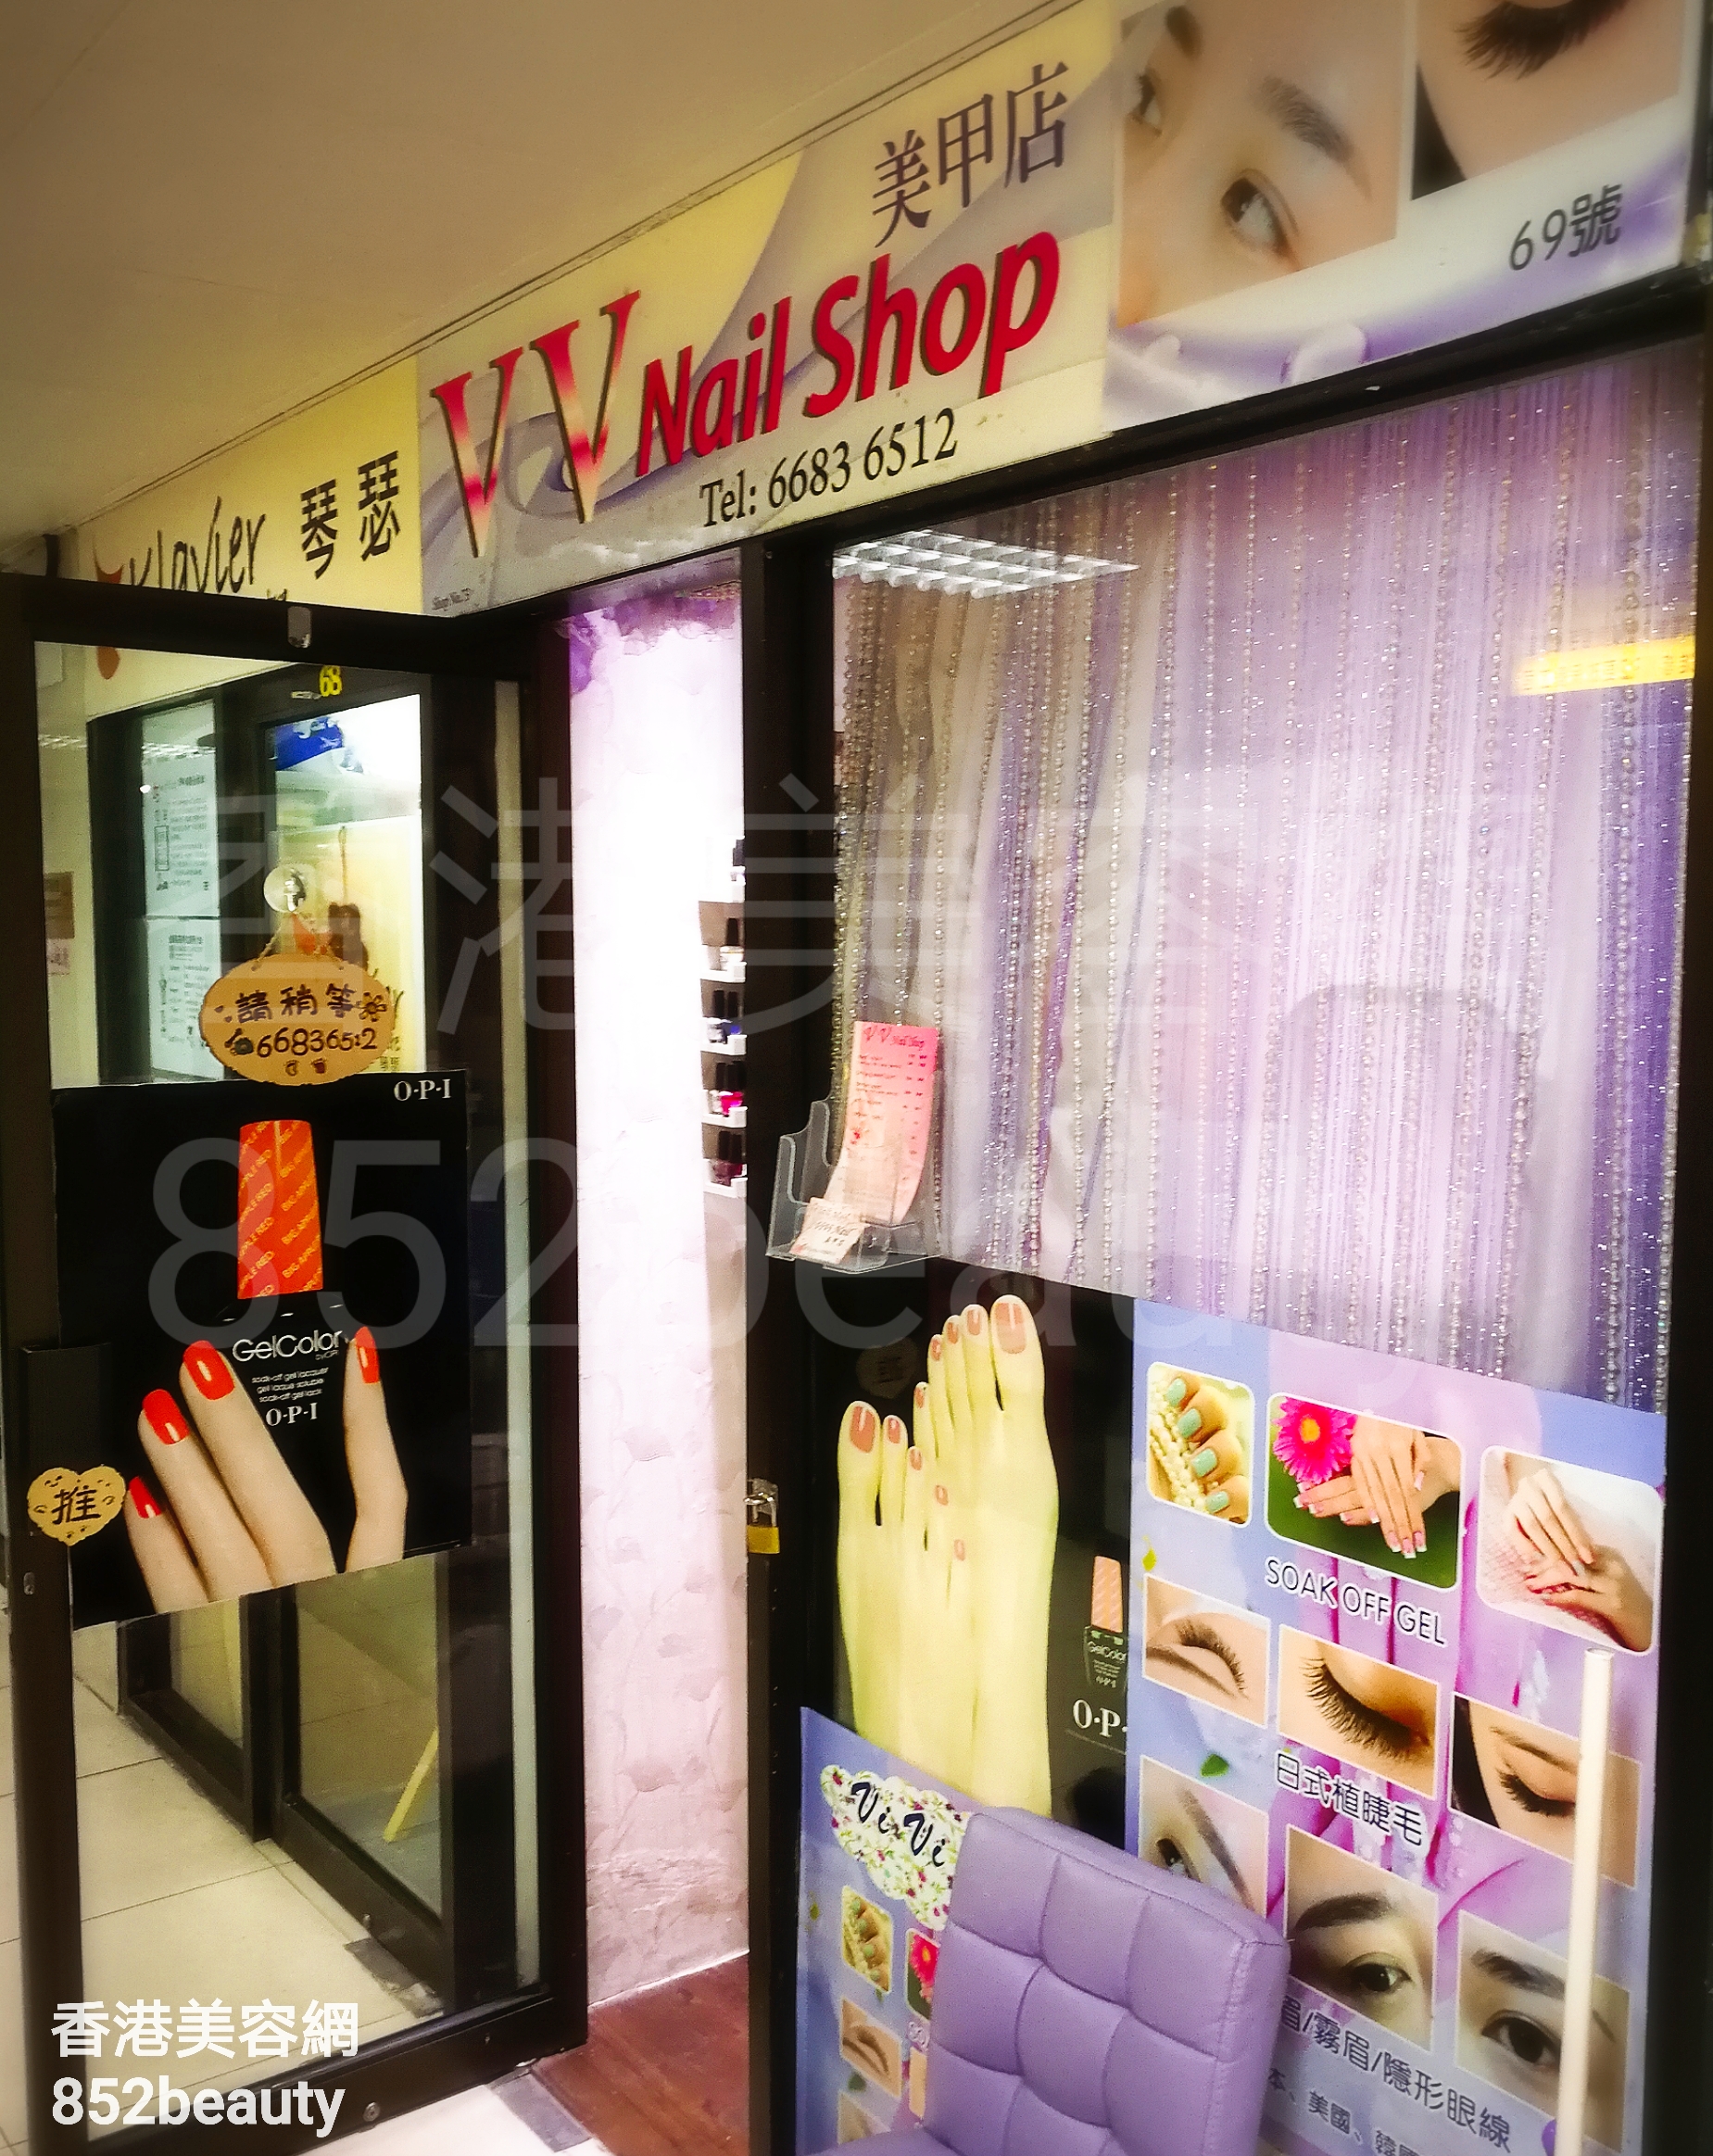 : VV Nail Shop